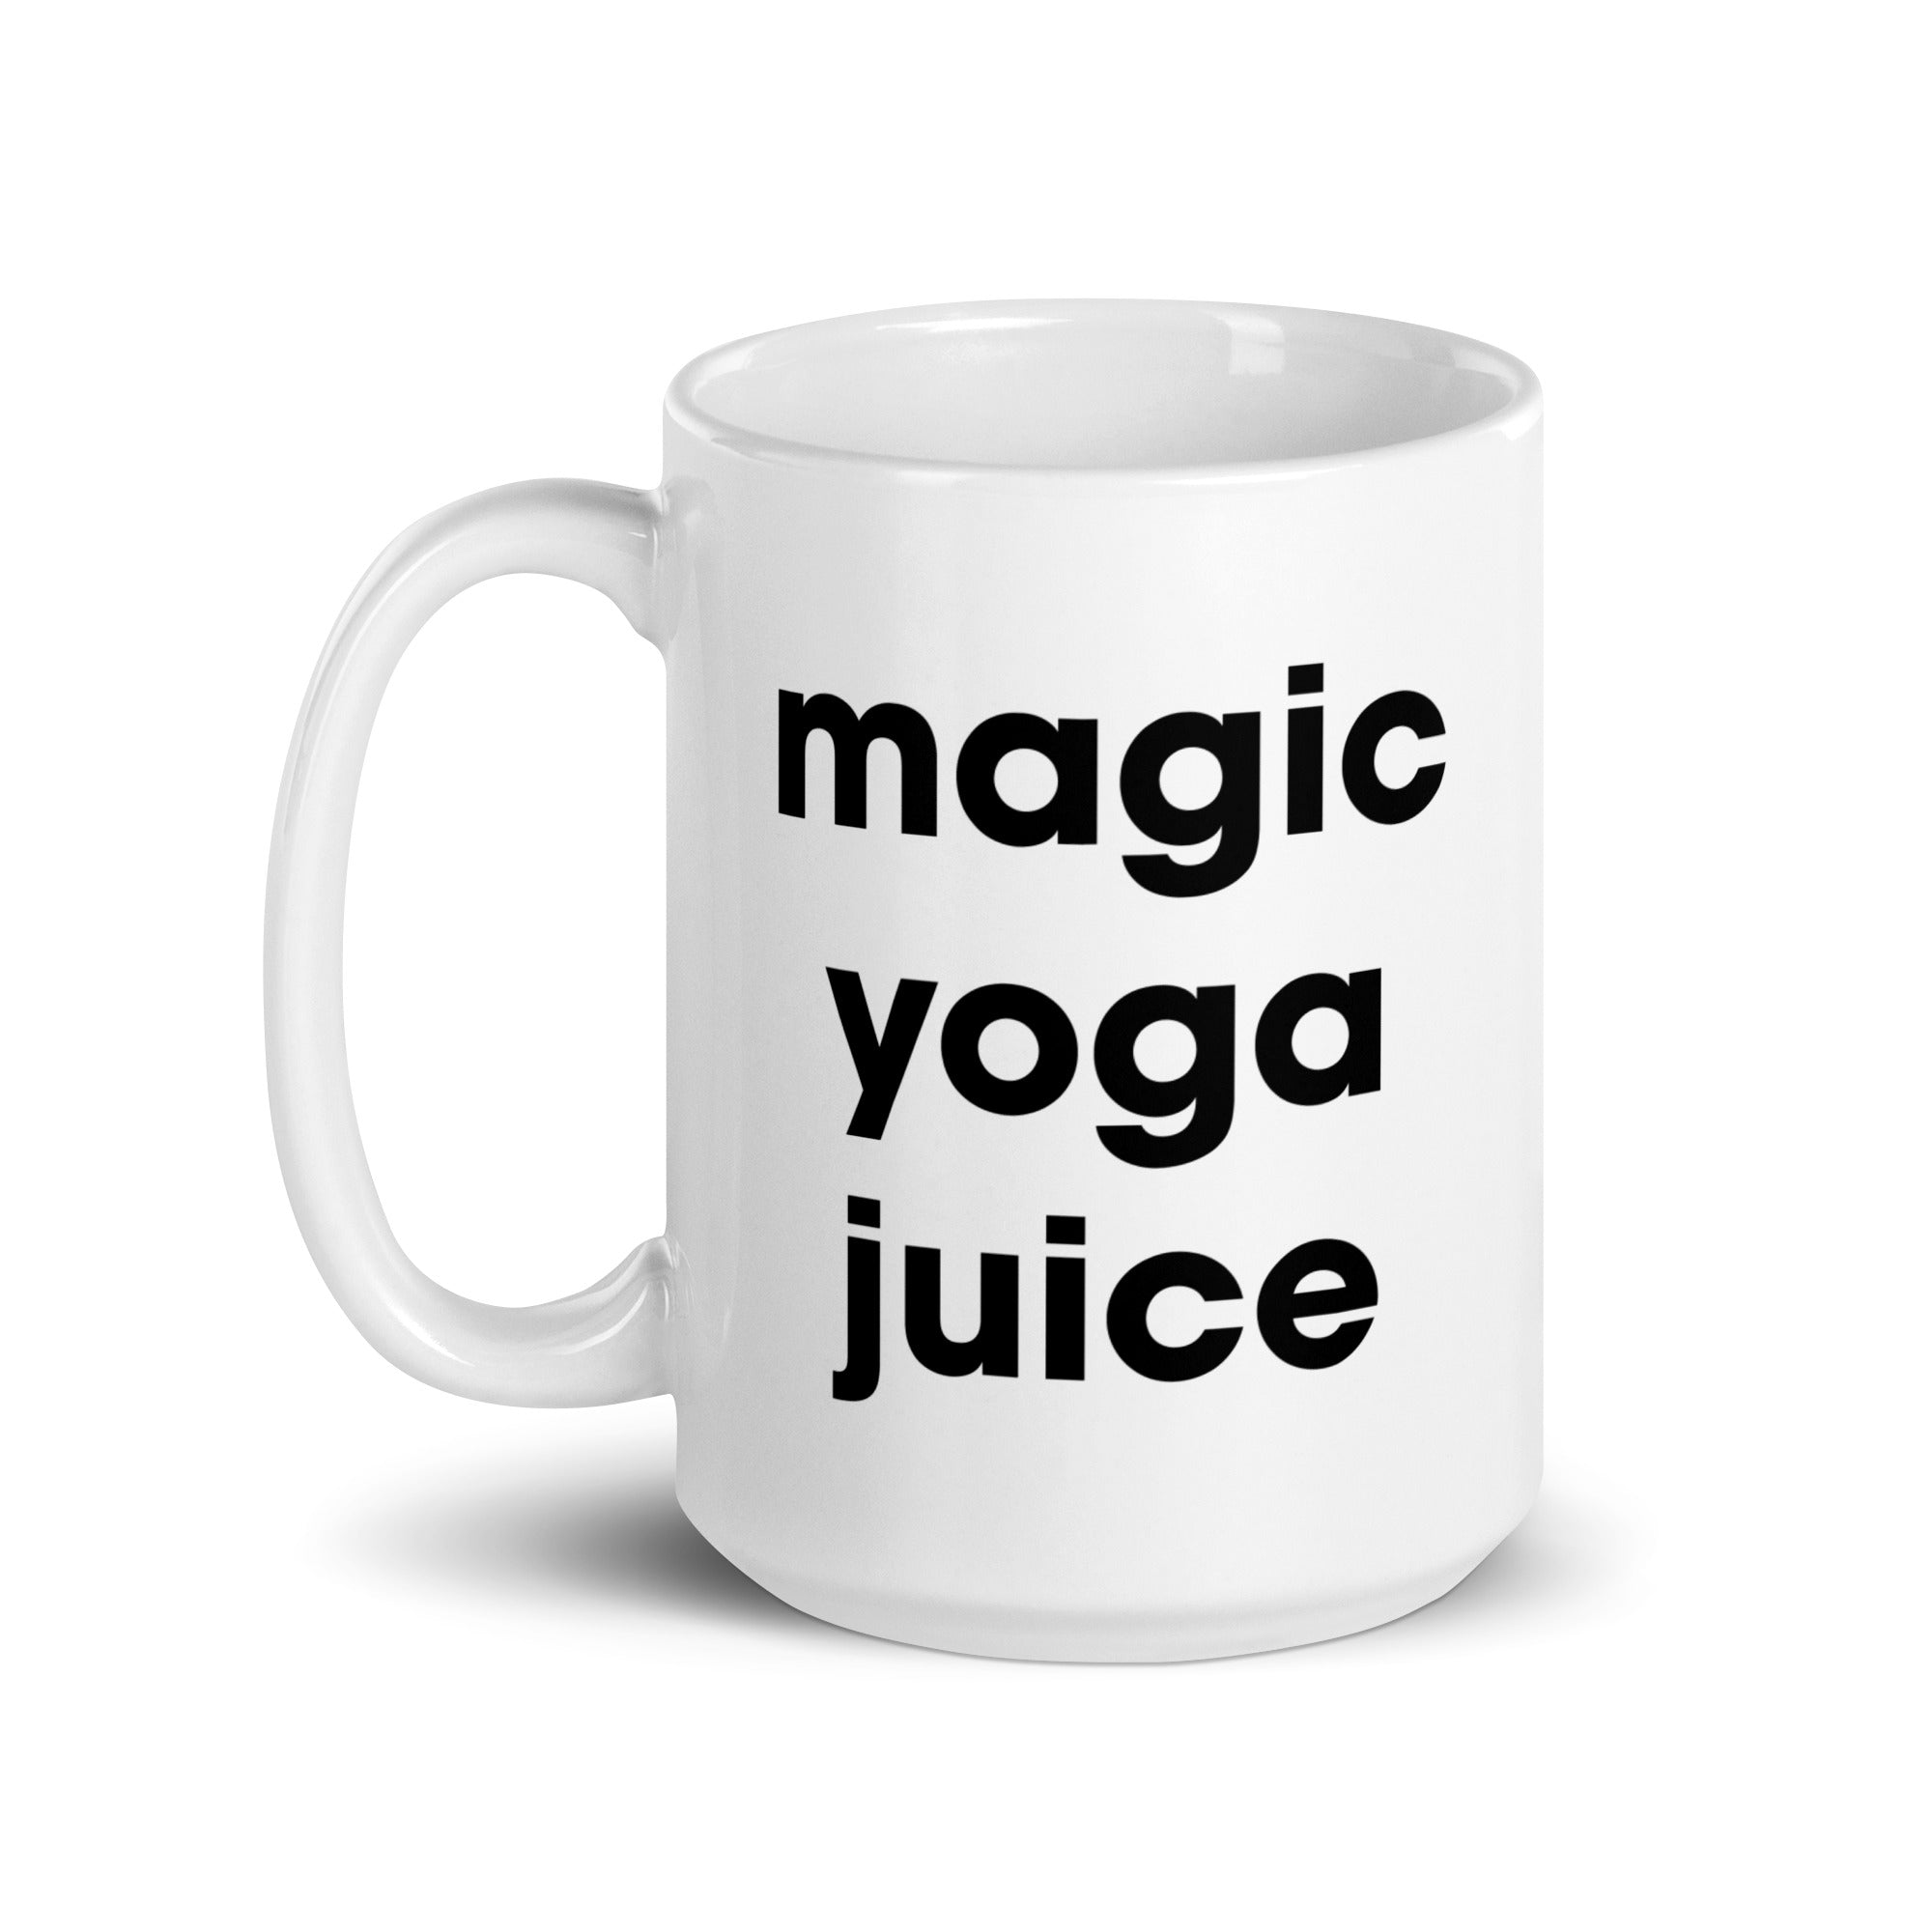 Mug Magique Squats - Sports/Fitness - mug-magique